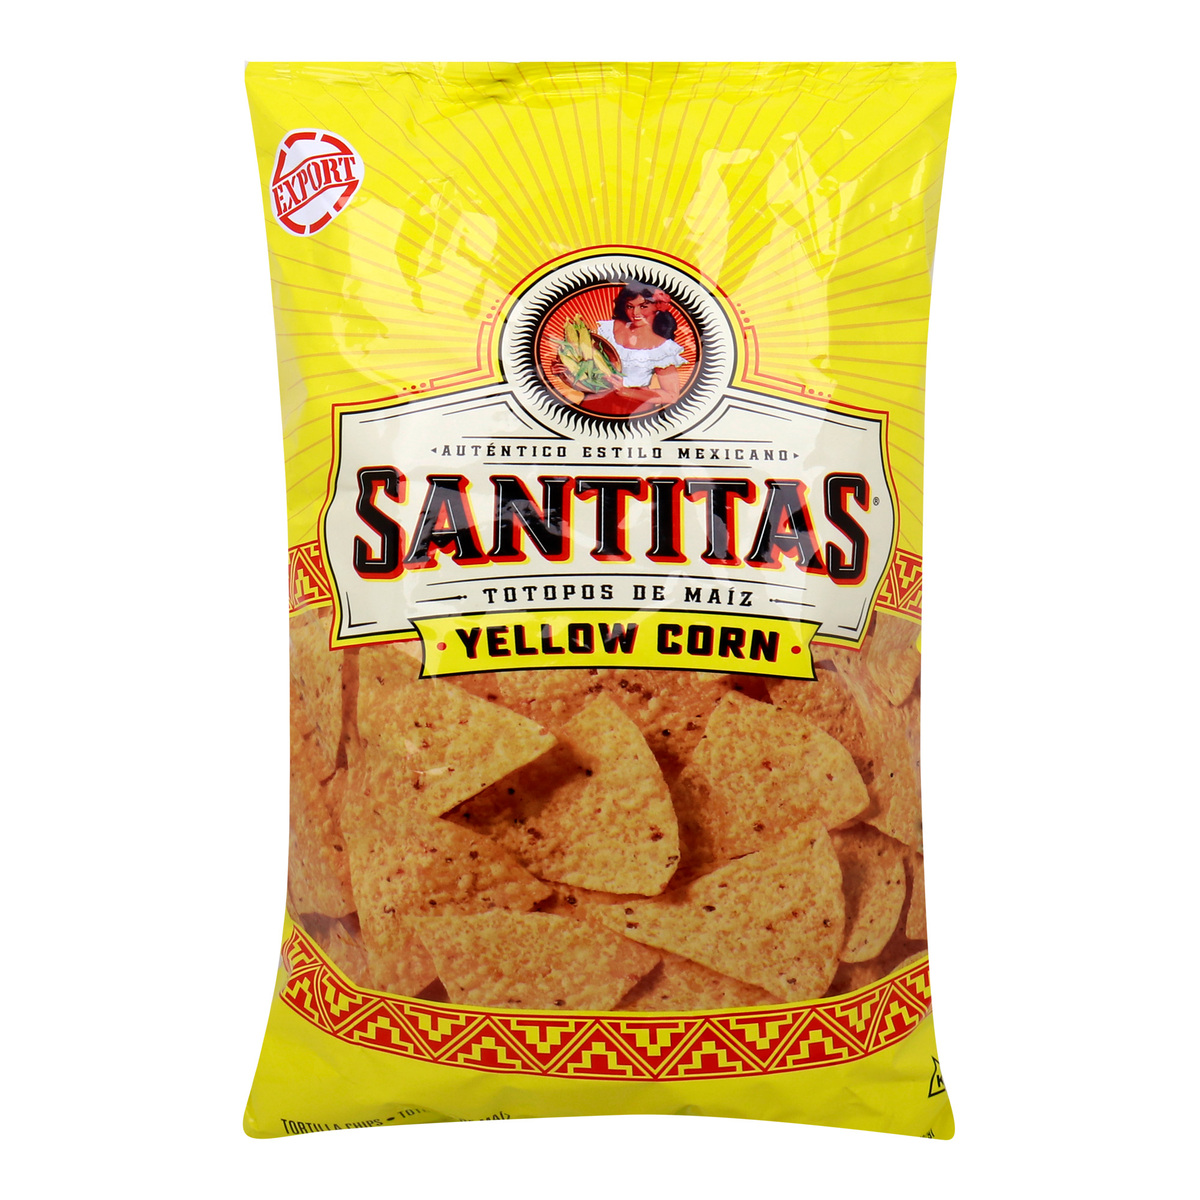 Buy Santitas Tortilla Chips 10 oz Online at Best Price | Gluten Free | Lulu Kuwait in Kuwait